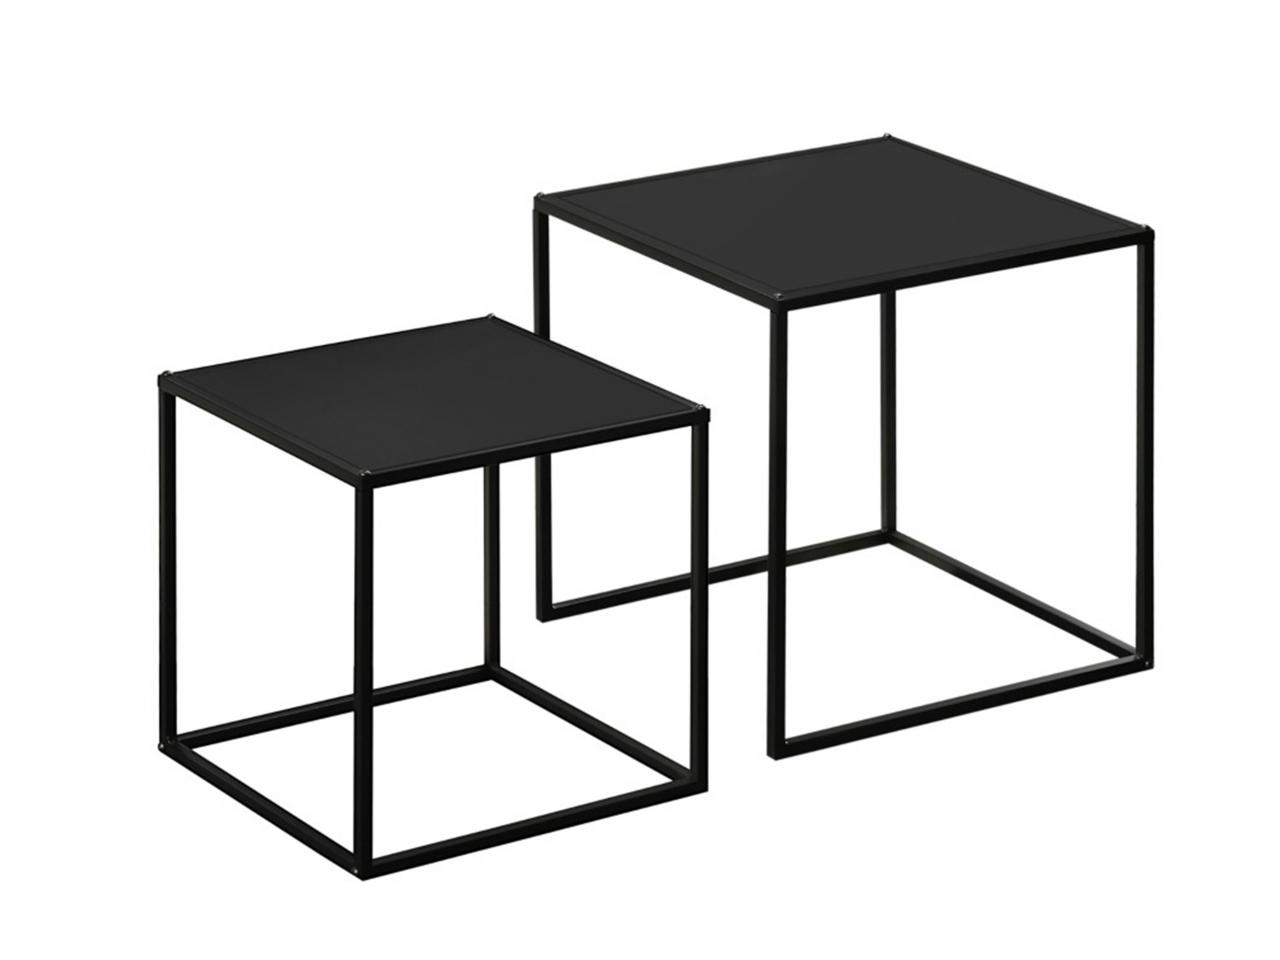 Odkládací stolky 839-563V00BK, konferenční stolek, skládací stolek, sada 2 ks, moderní design, ocelový rám, černý